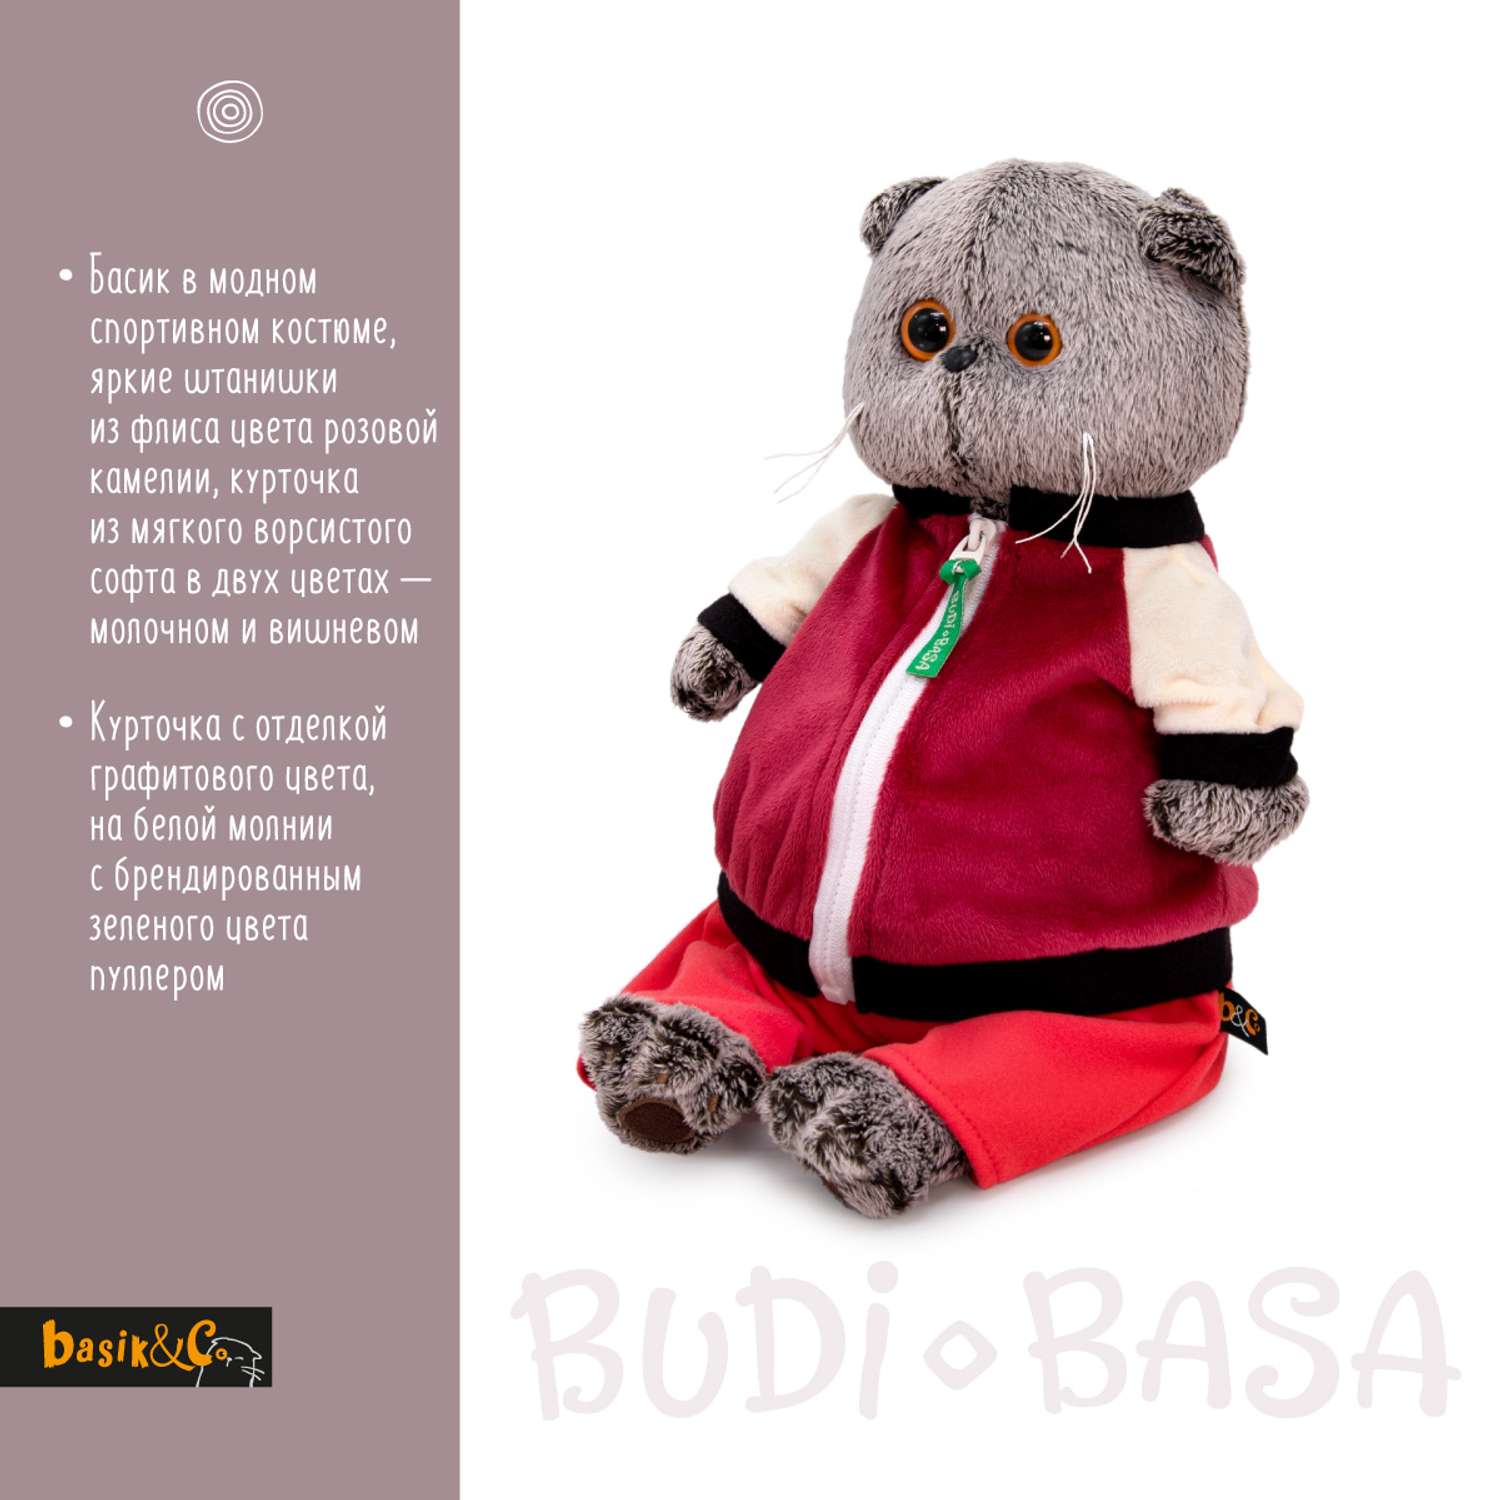 Мягкая игрушка BUDI BASA Басик в спортивной курточке и штанах 19 см Ks19-227 - фото 2